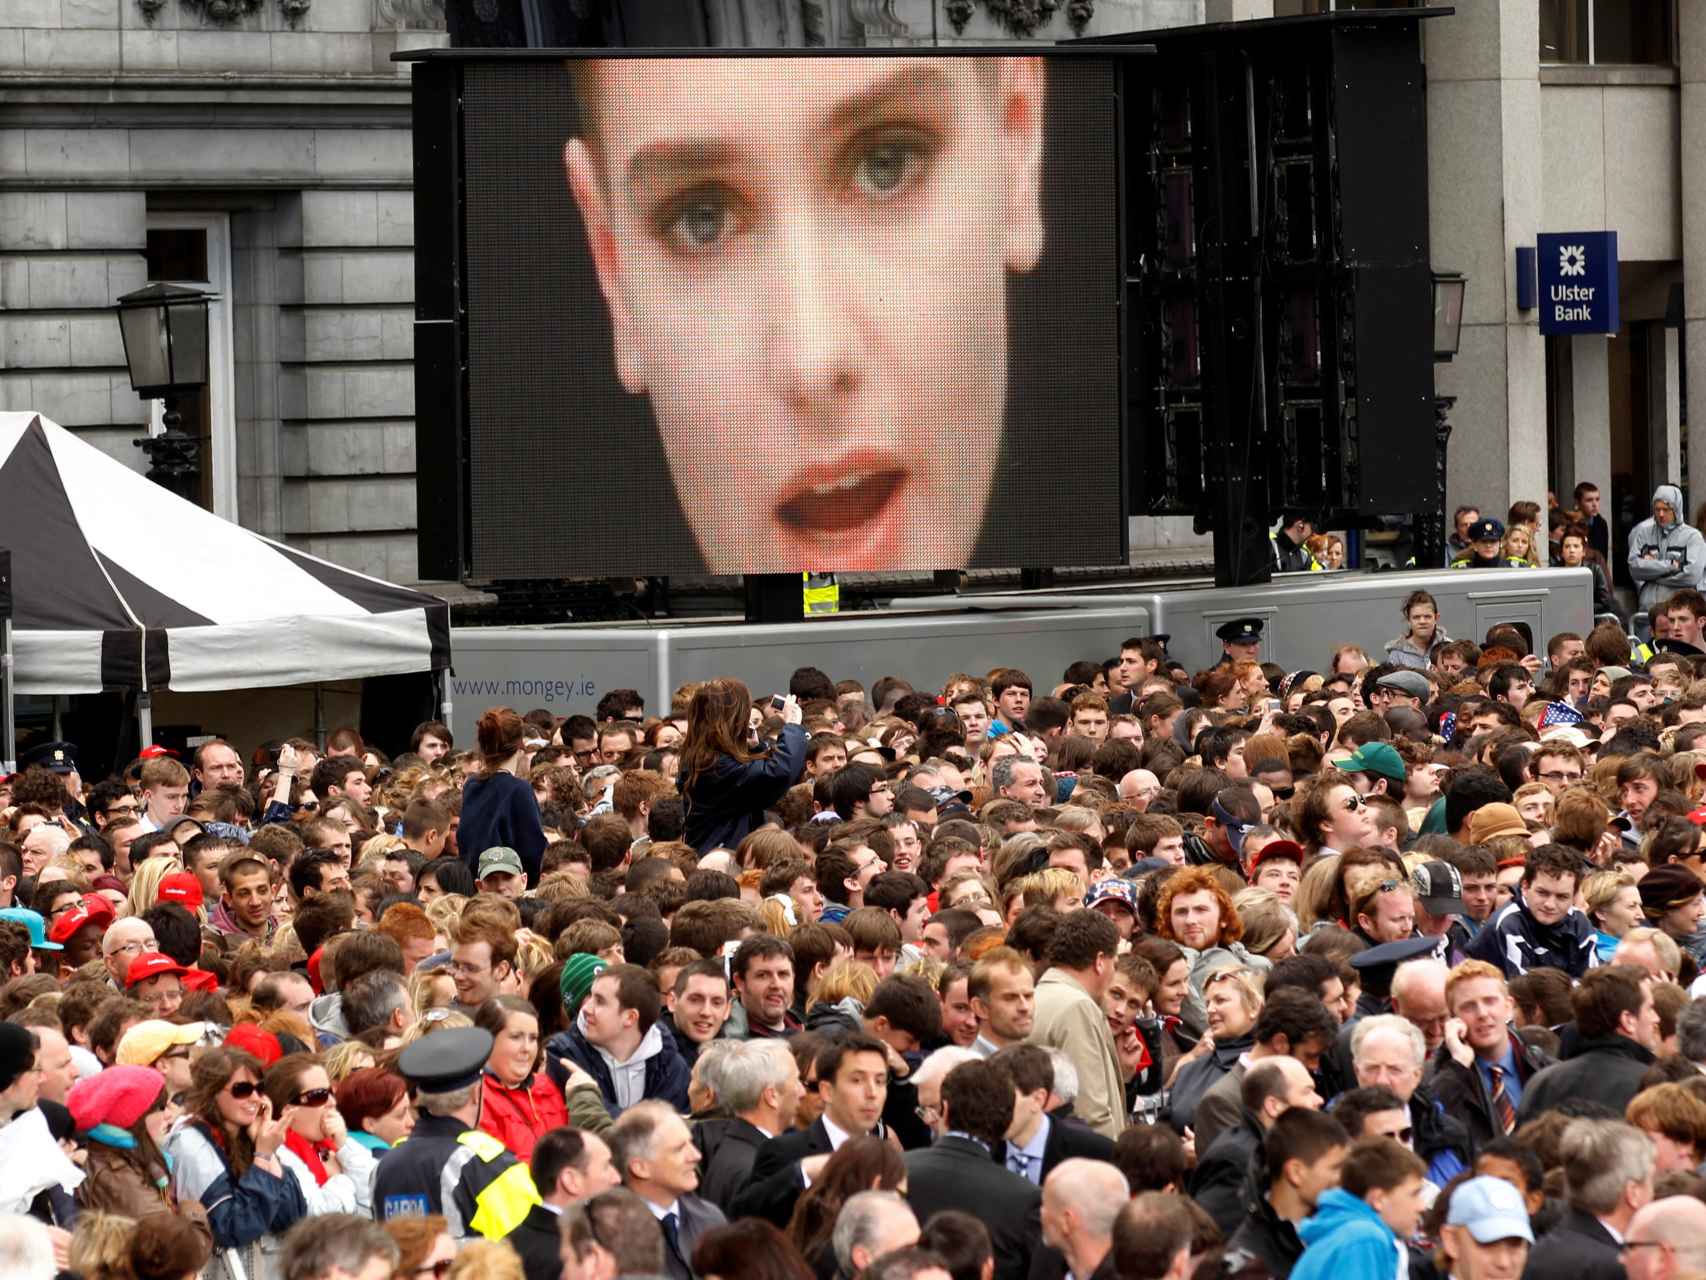 El videoclip de 'Nothing Compares 2 U' proyectado en una pantalla gigante en Dublín en 2011 antes de un acto de Barack Obama.